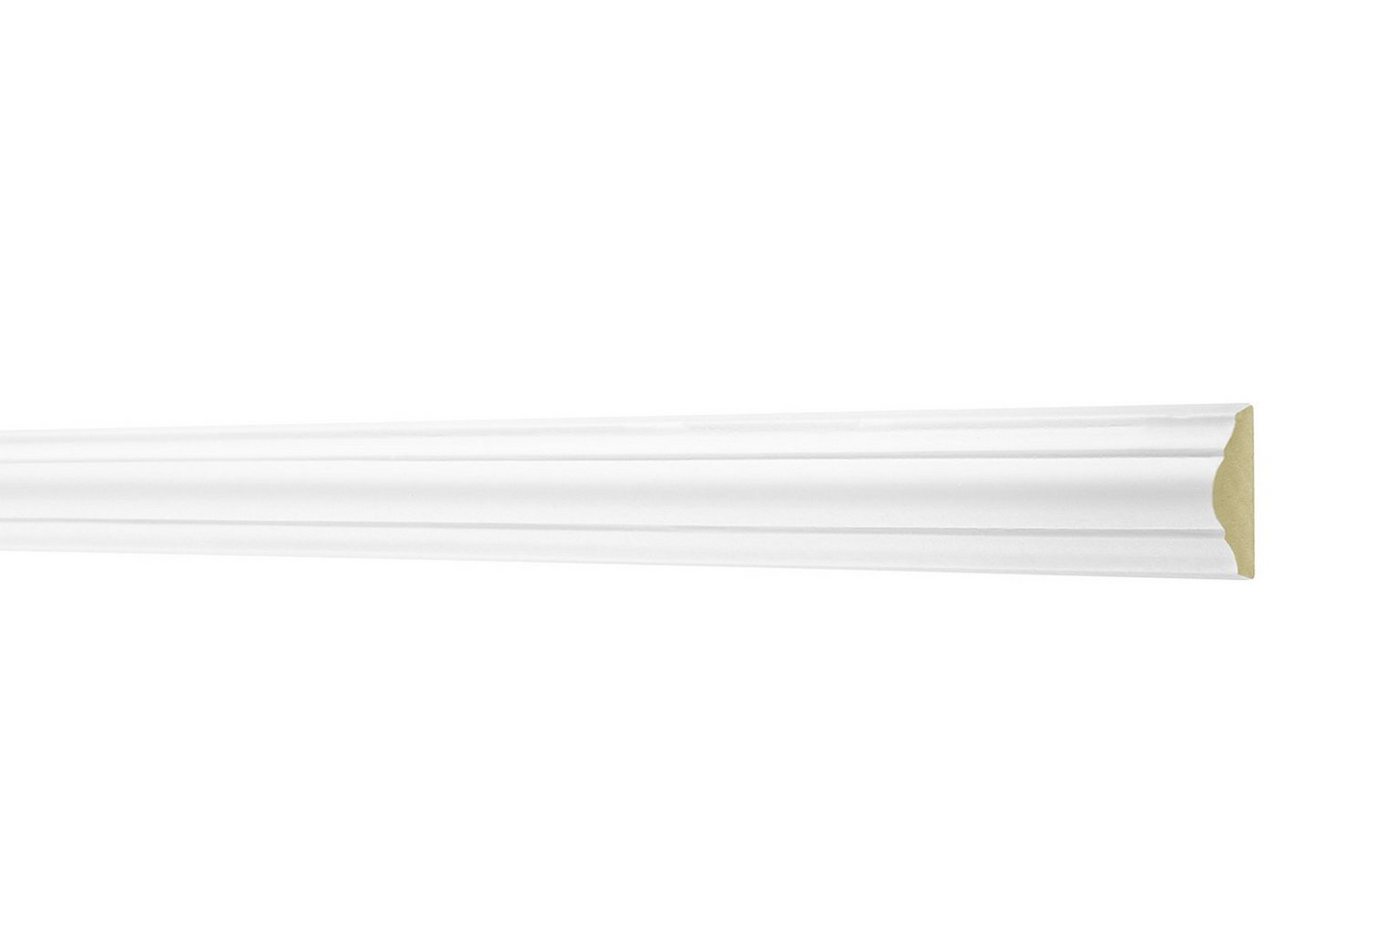 Hexim Perfect Stuckleiste AD 341, Flachleiste aus PU Serie 1 - Stuckleiste glatt, weißes Zierprofil, hart & stoßfest - Wandleiste vorgrundiert von Hexim Perfect